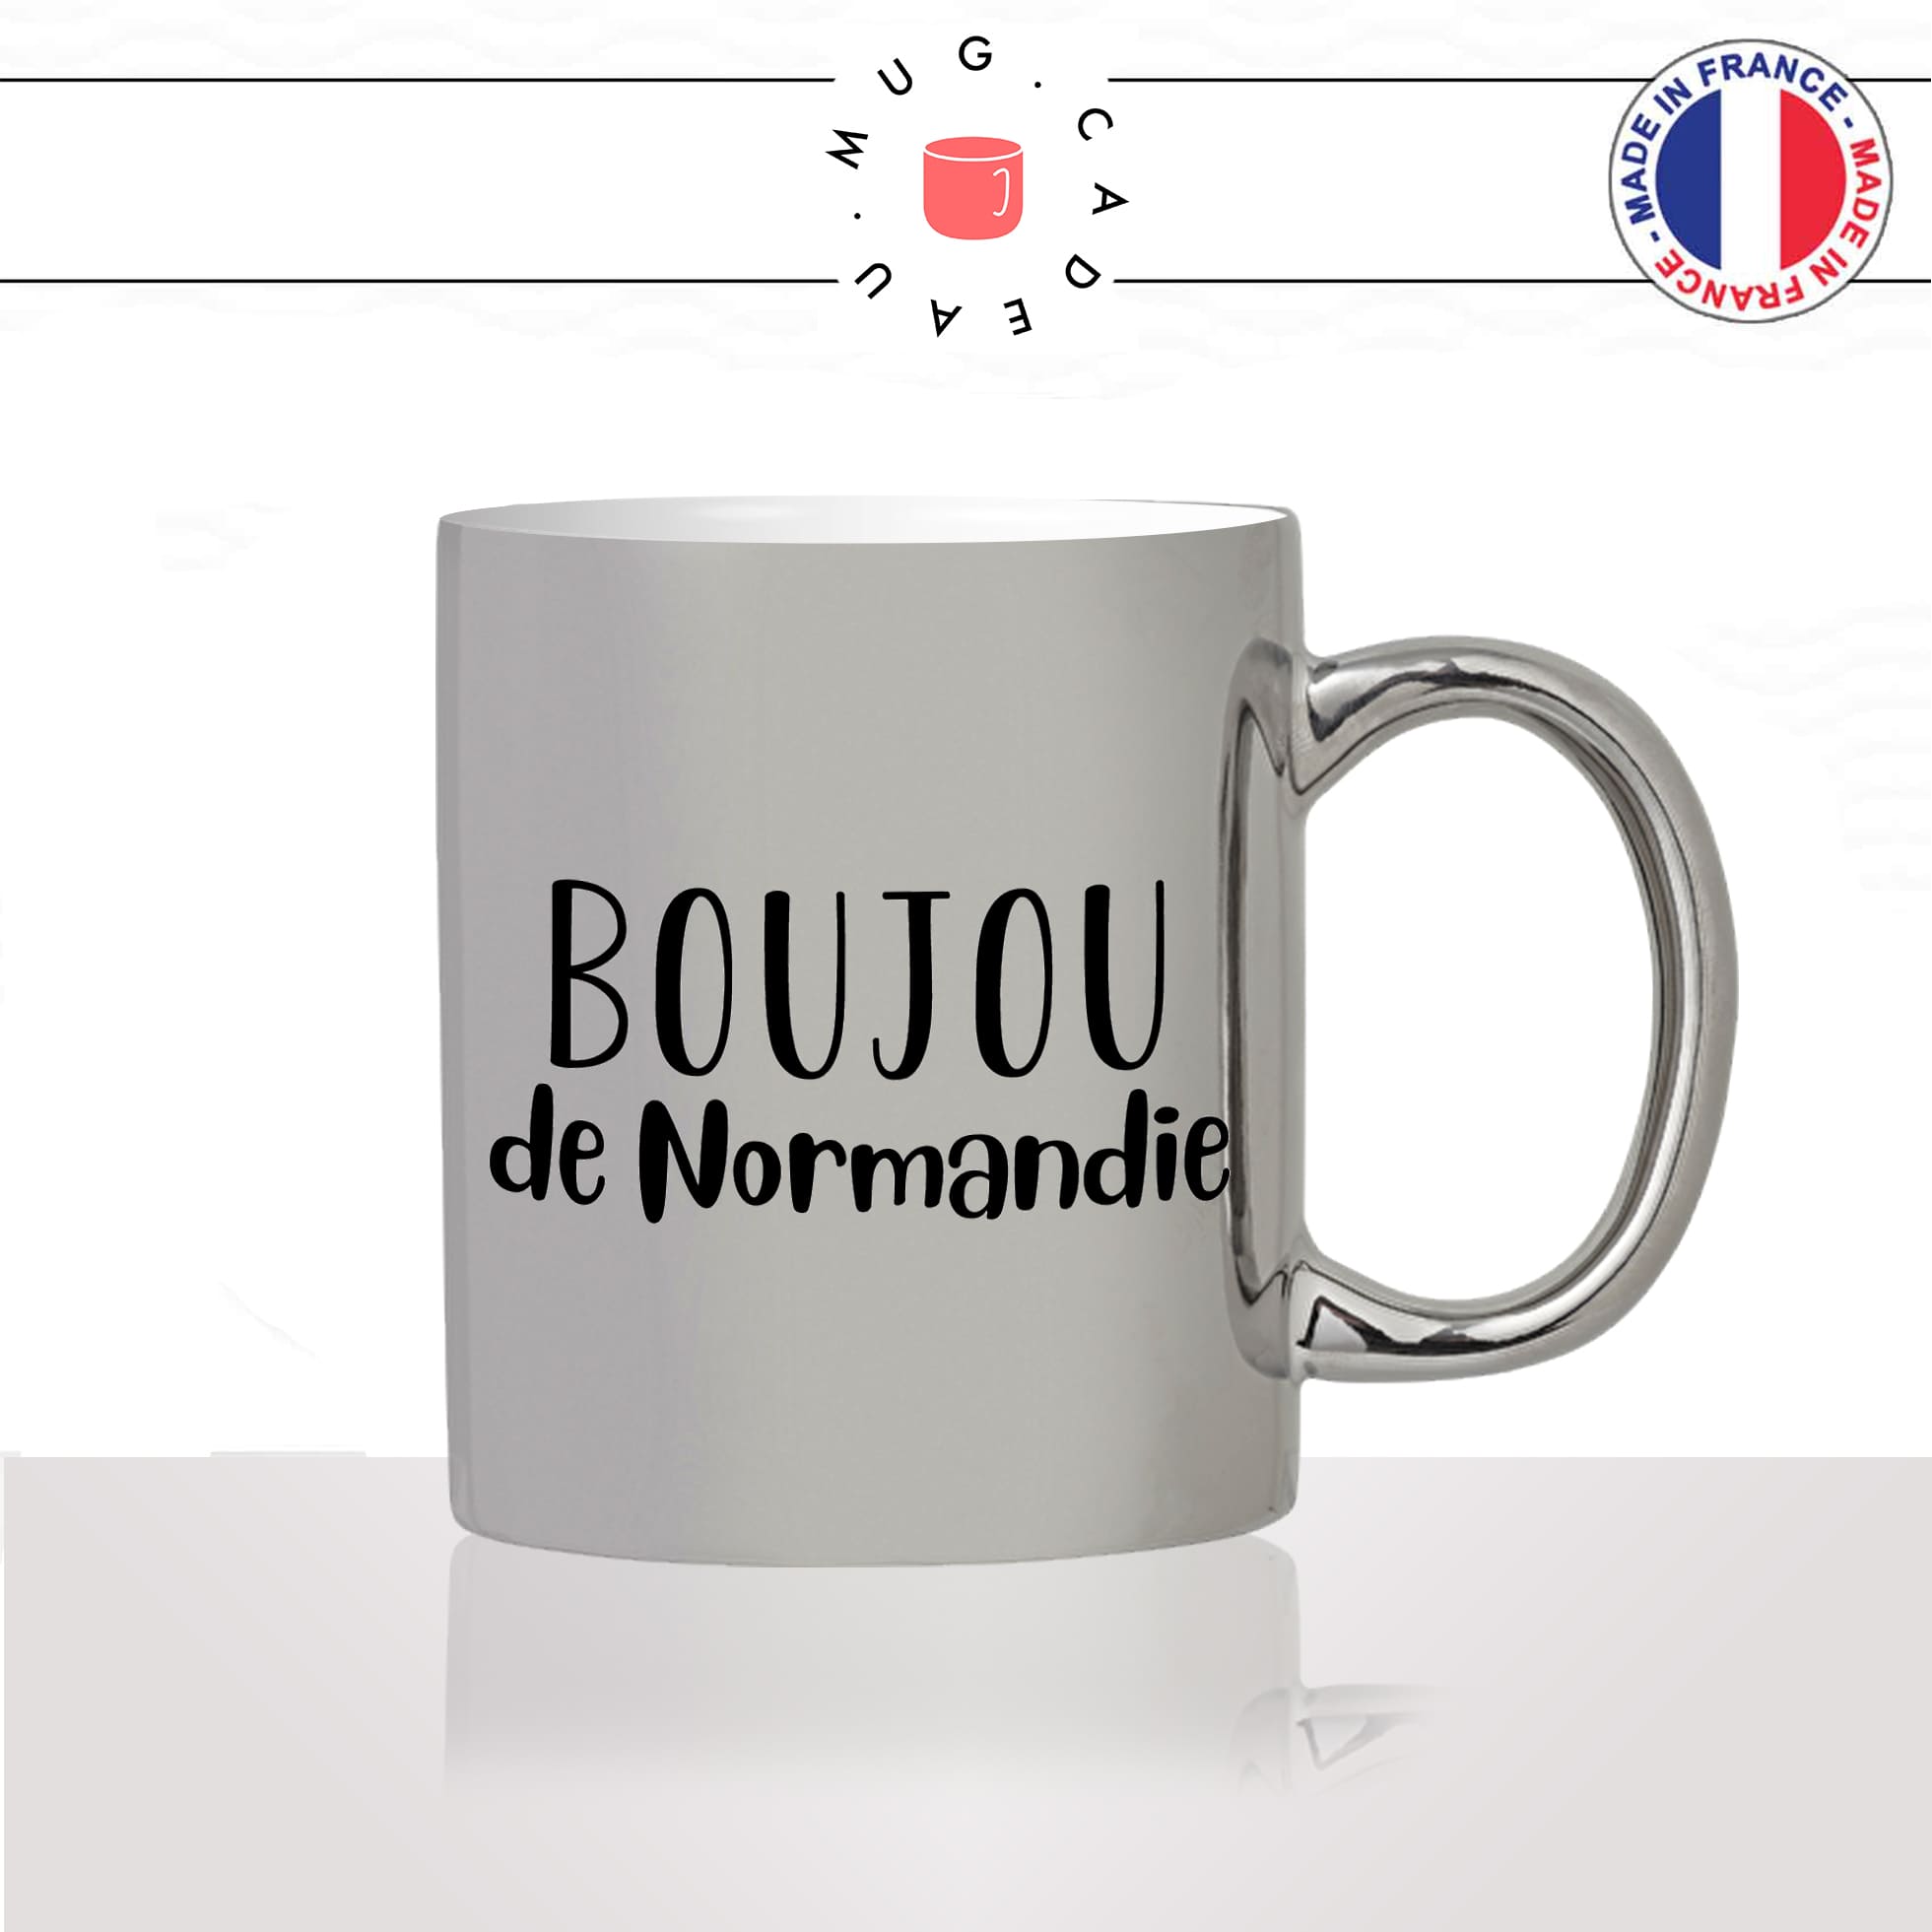 mug-tasse-argent-argenté-silver-boujou-de-normandie-normand-bisou-bonjour-patois-france-francais-idée-cadeau-fun-cool-café-thé2